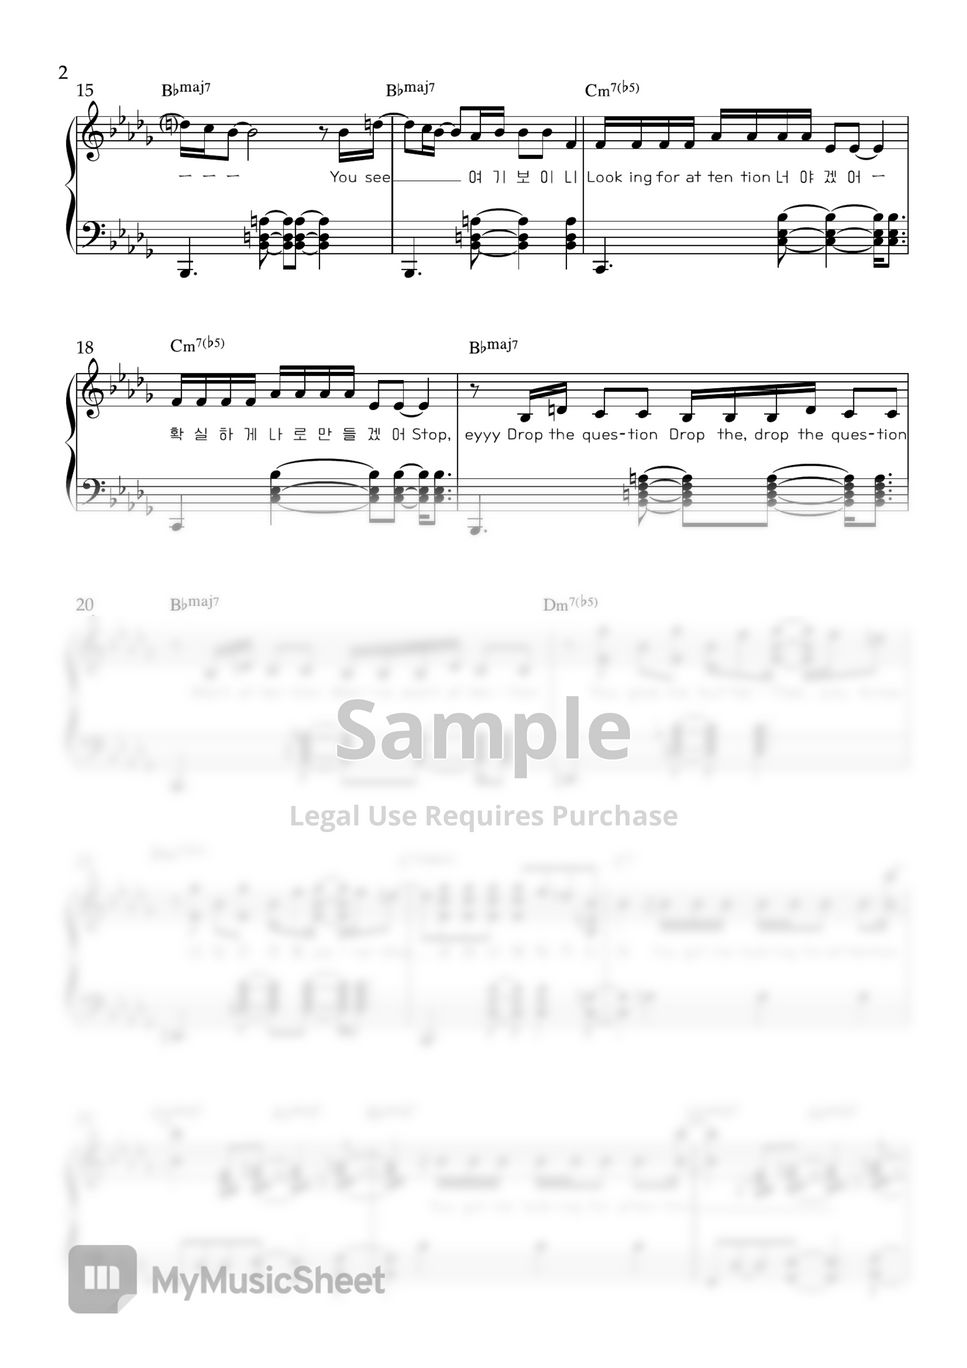 뉴진스 - Attention (피아노커버/원키, 쉬운키/ 멜로디연주/ 가사, 코드 포함) by song's piano